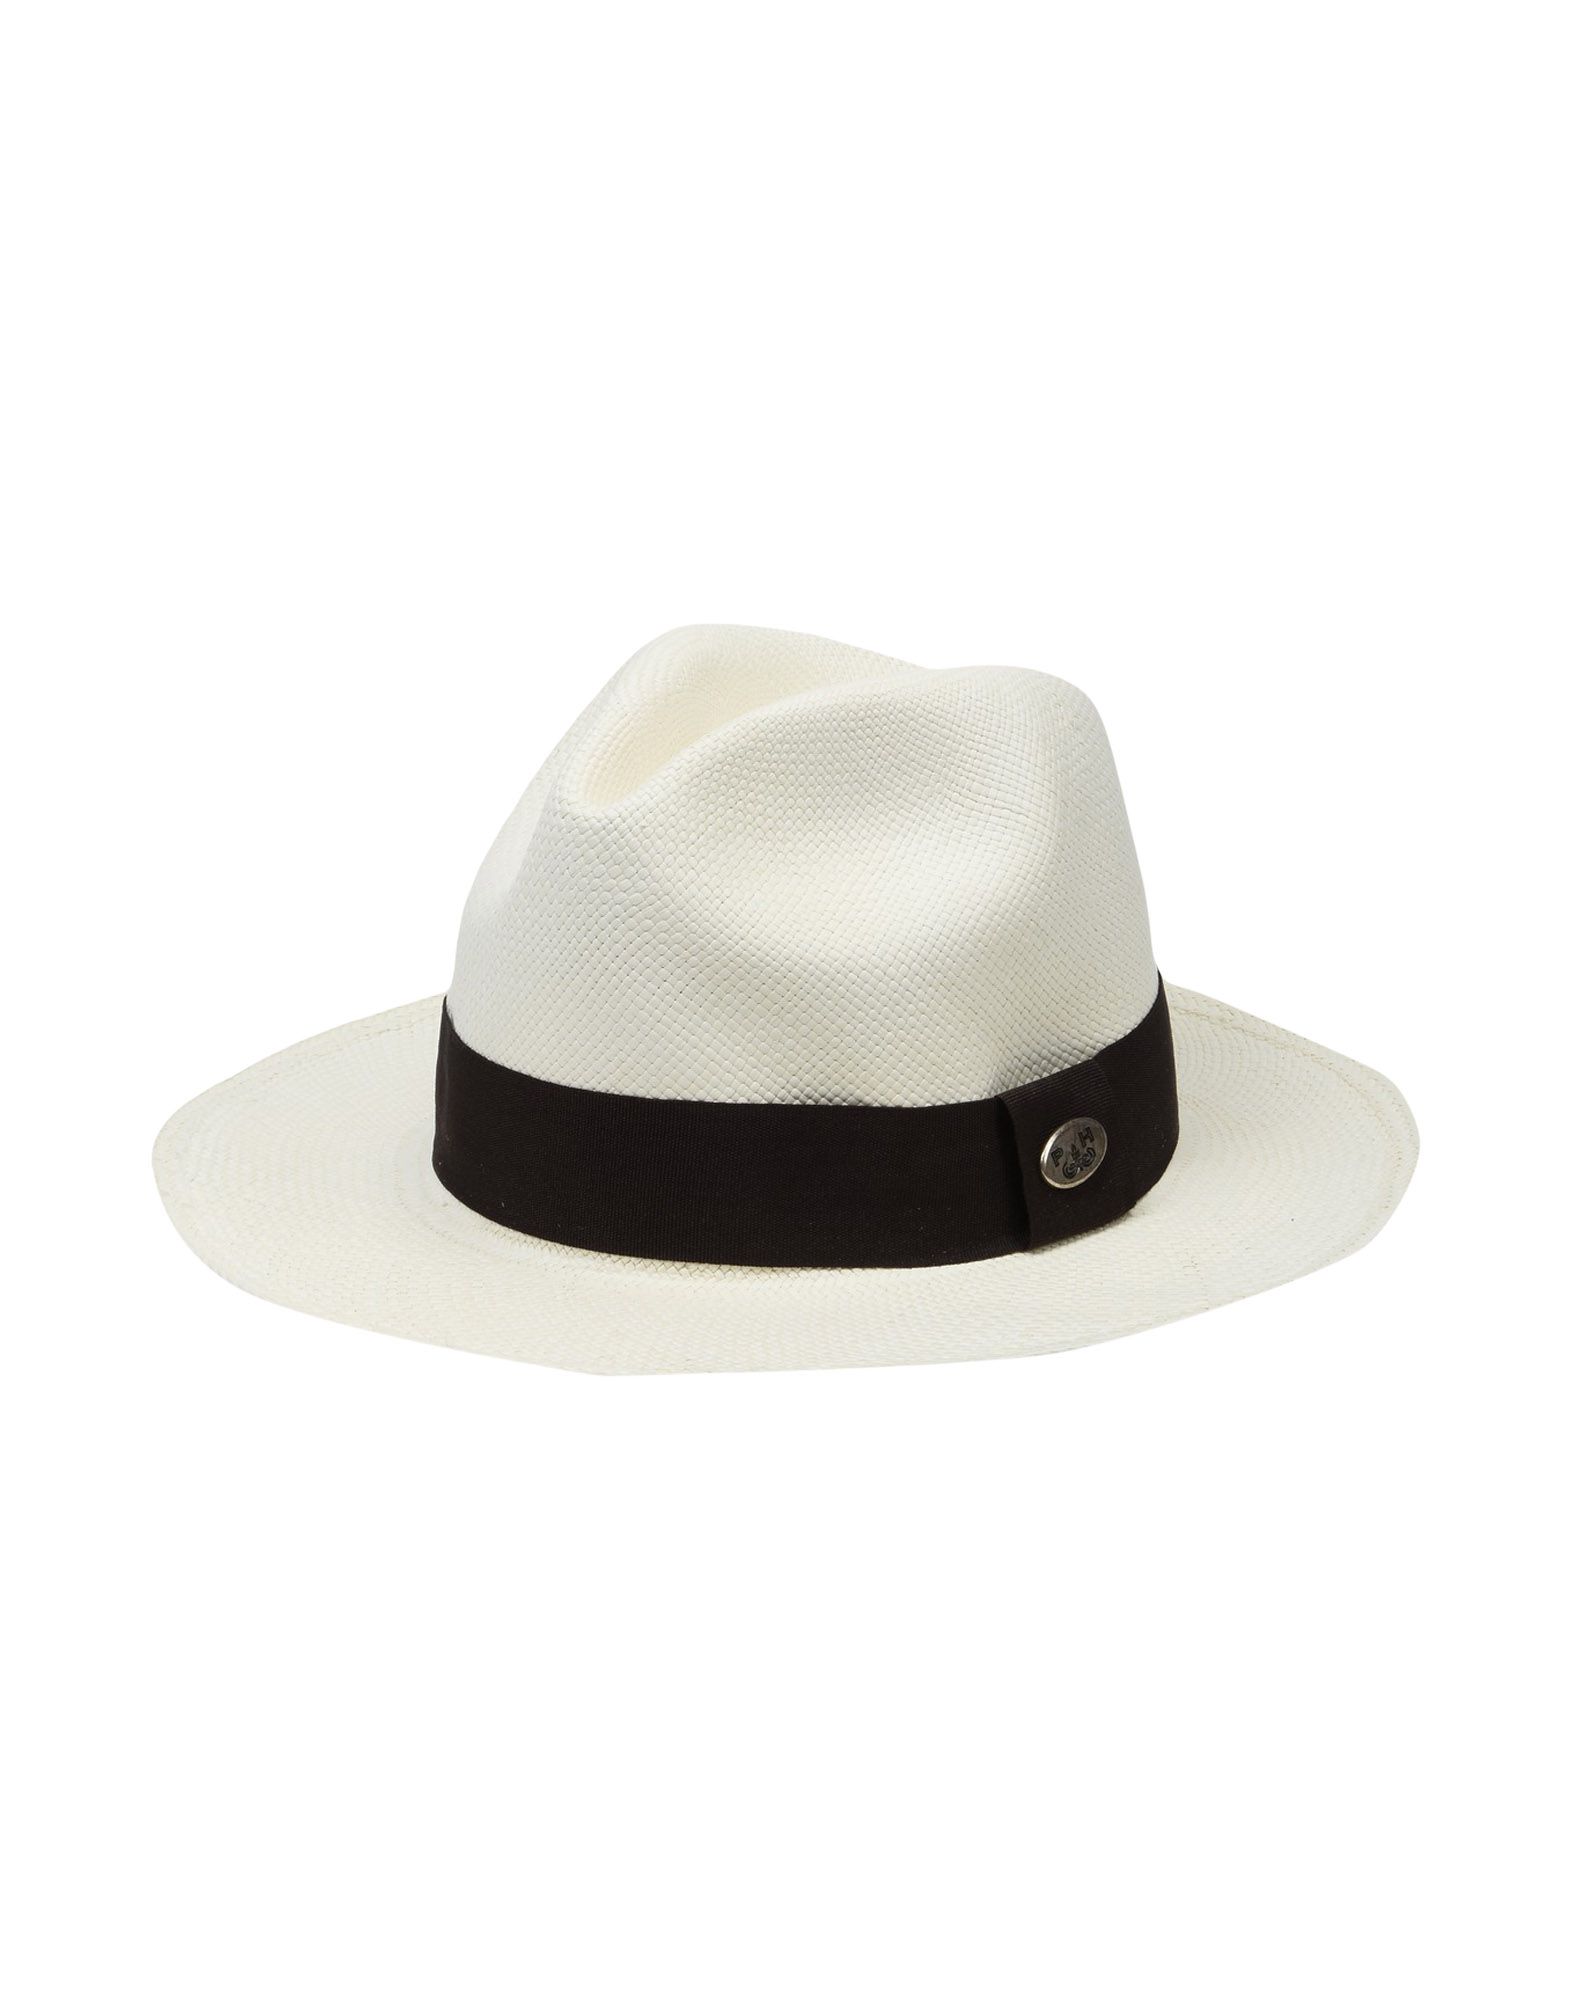 《送料無料》PANAMA HATTERS Unisex 帽子 ダークブラウン M ストロー 100% PANAMA CLASSIC EMPORIO